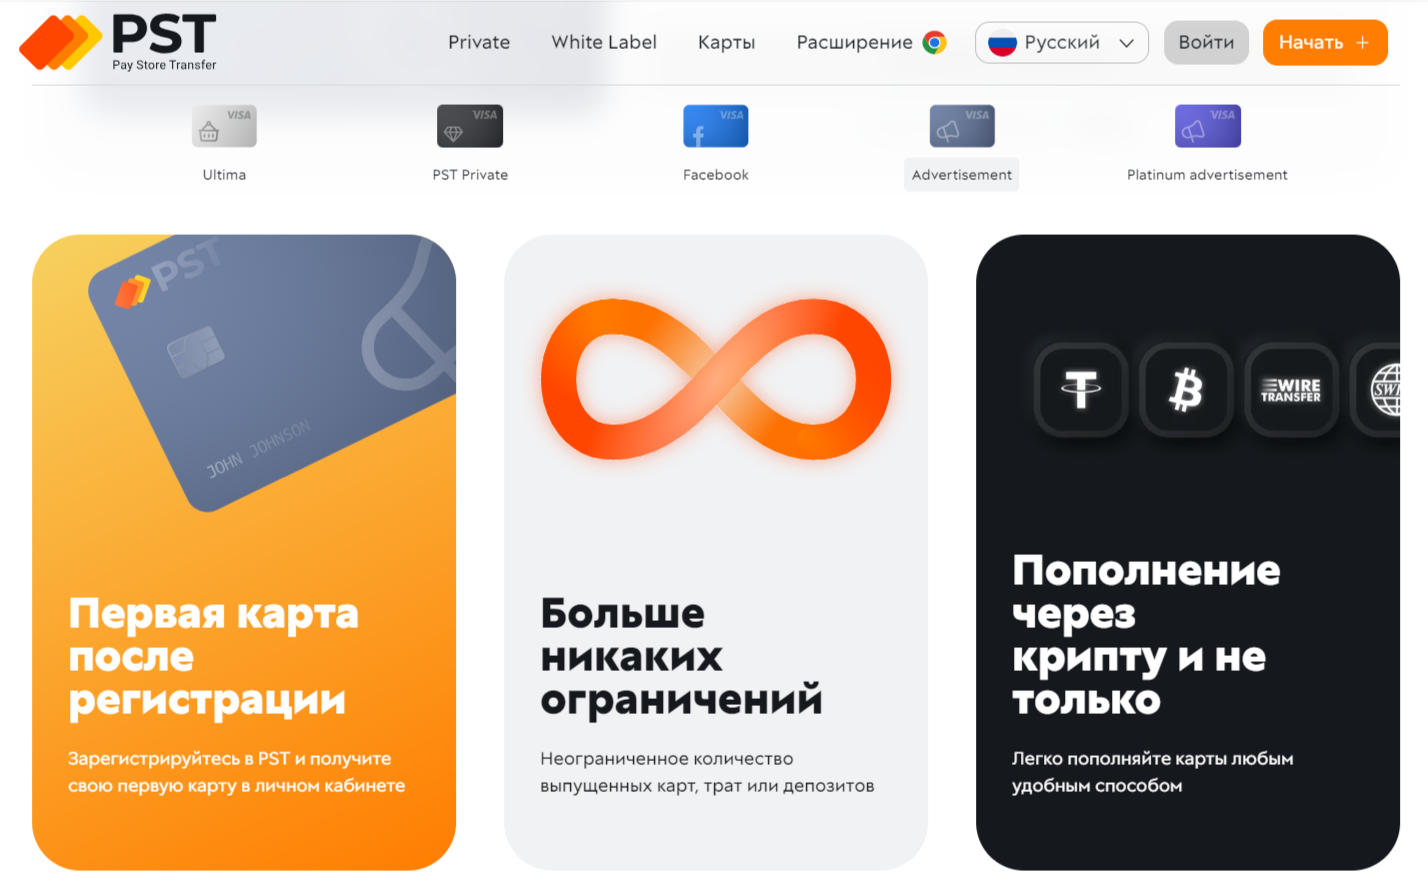 Pay Store Transfer - способ регистрации в PayPal в России